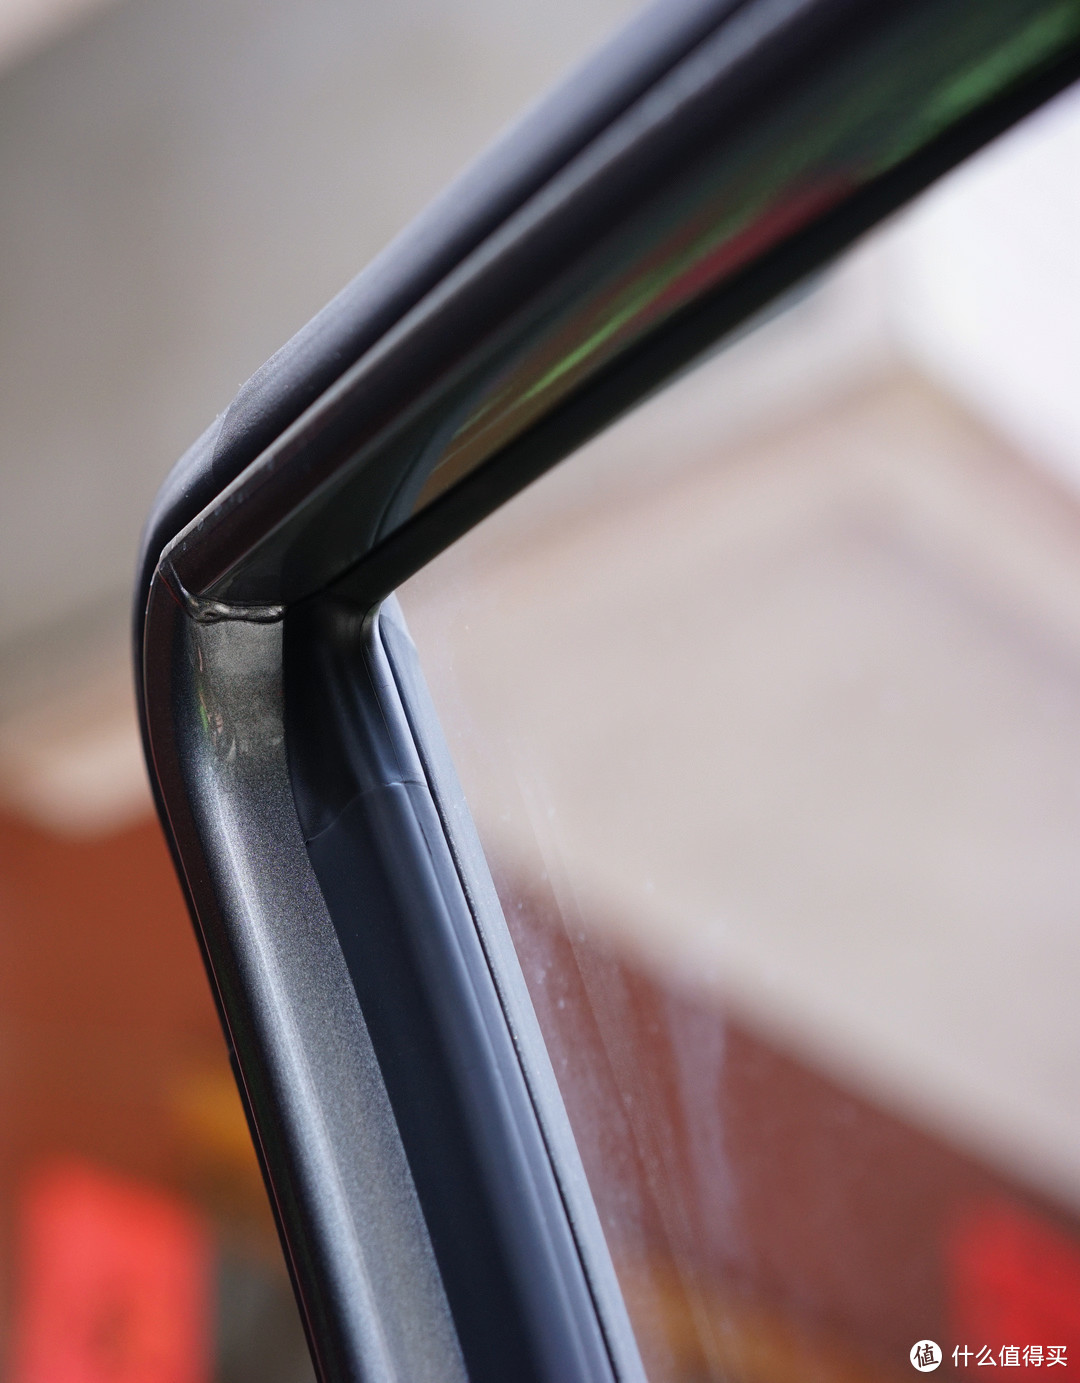 上篇有值友在评论中提到GM6的车门框接缝问题，目前已知厂家3月开始做出了改进